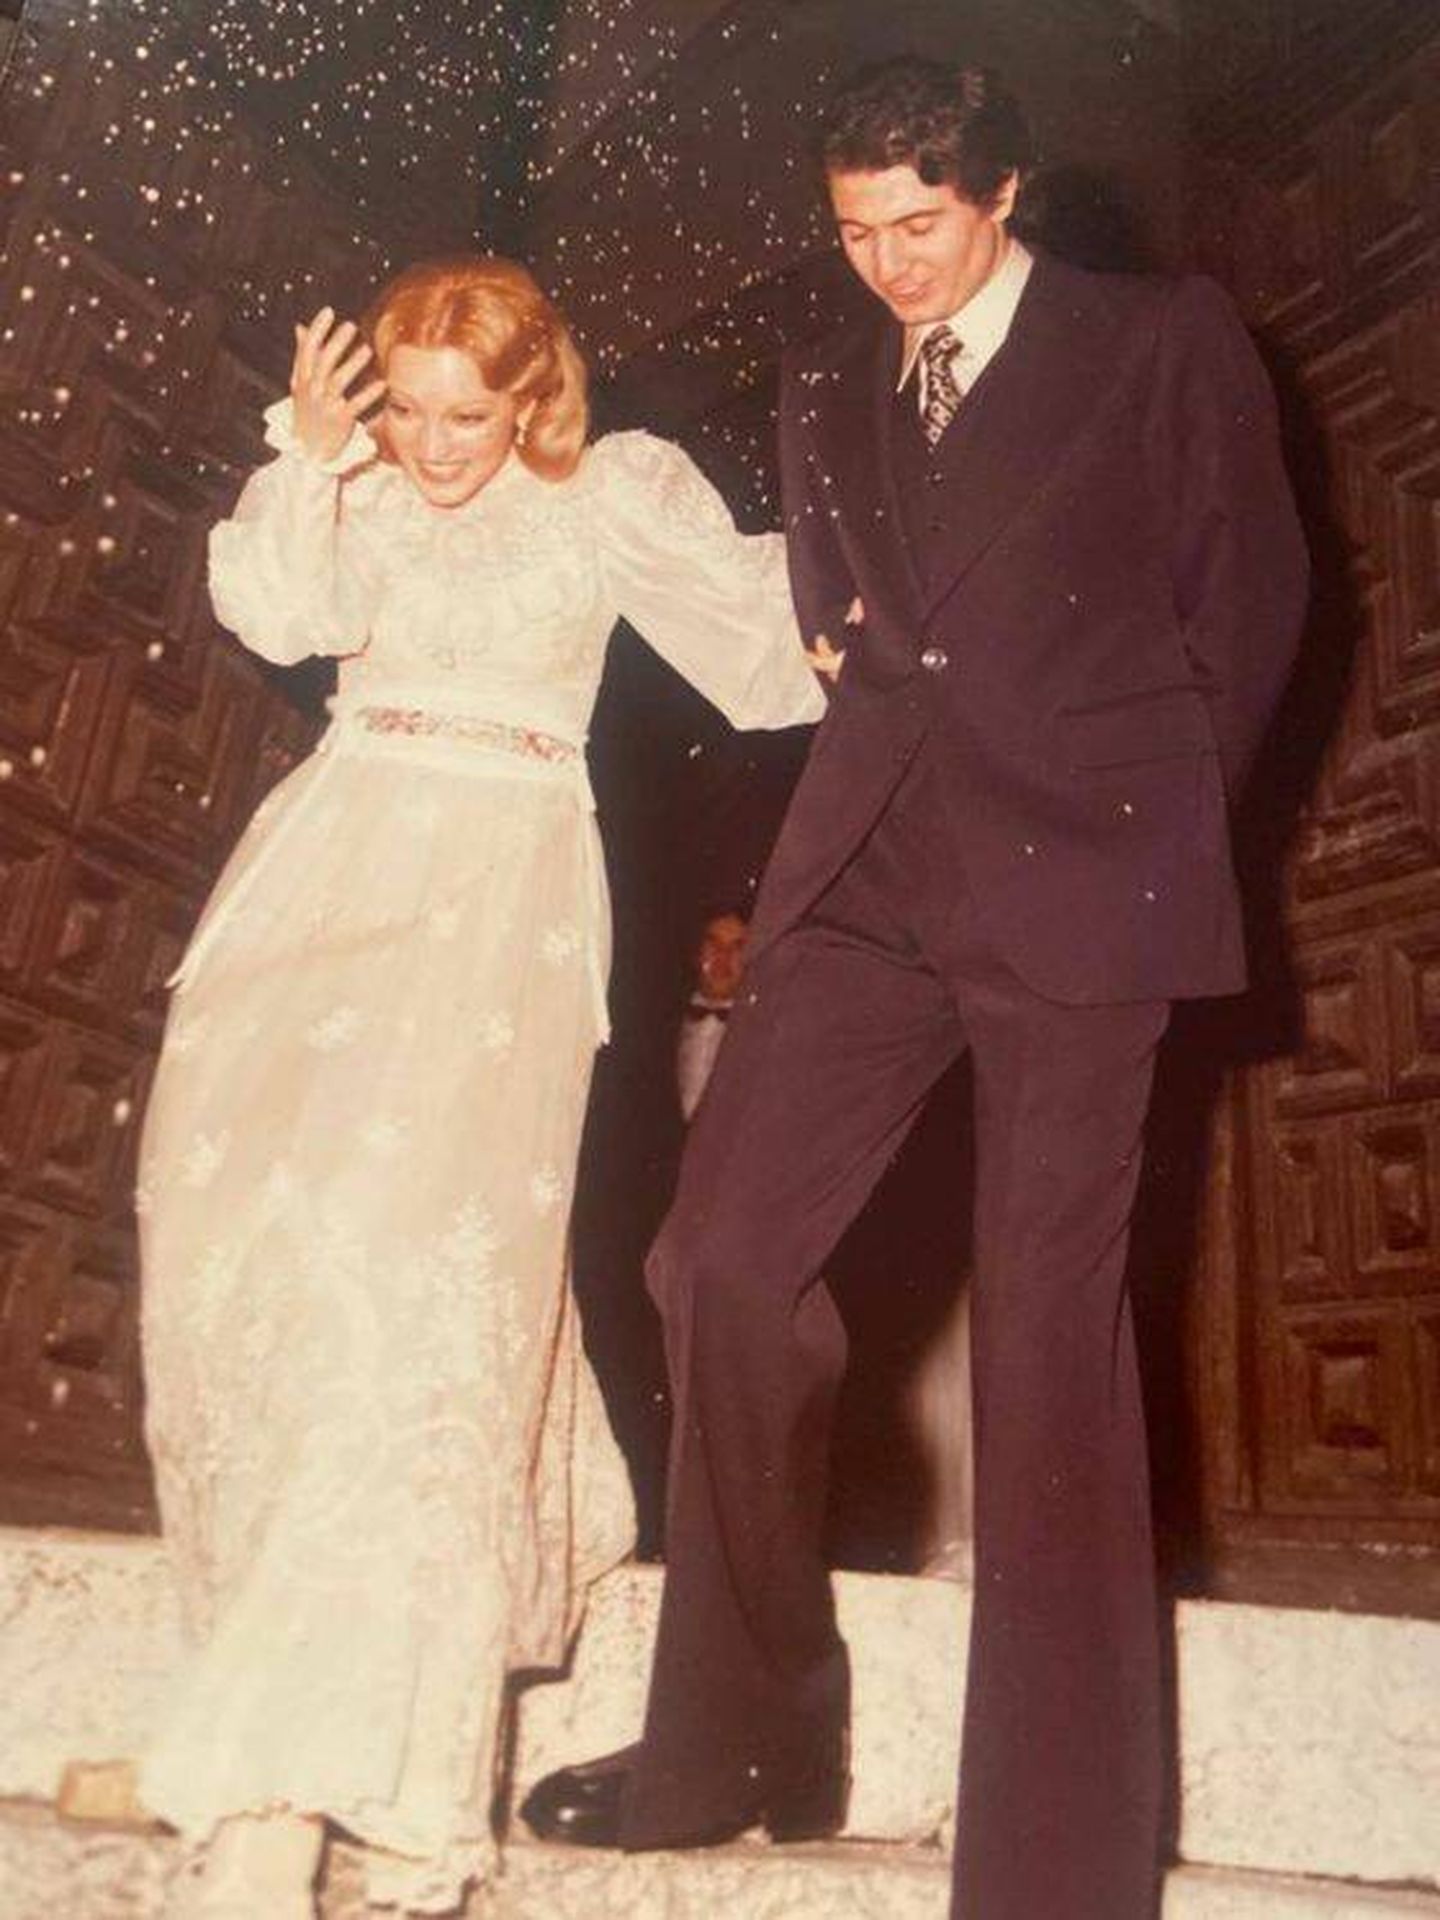  Guillermo Capdevila y Carmen Lomana, el día de su boda. (Cortesía)